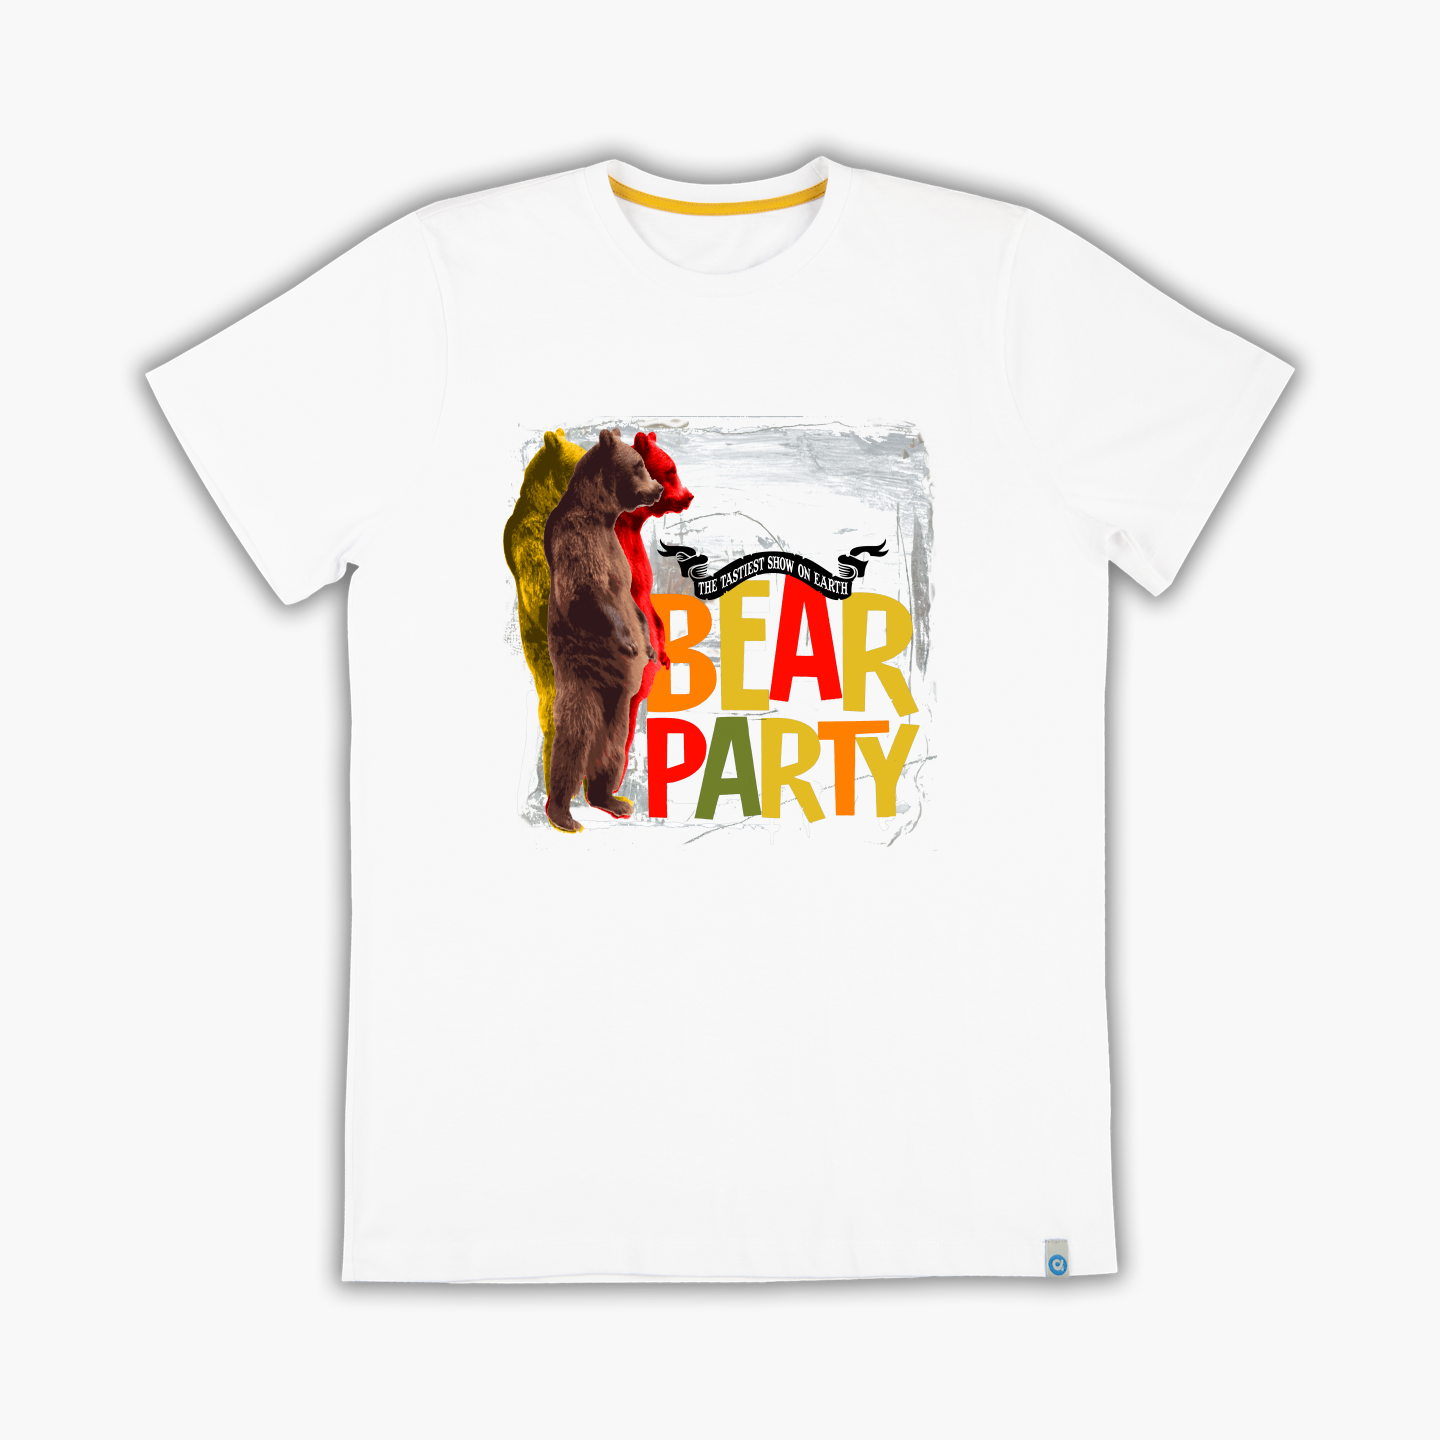 Bear Party - Tişört